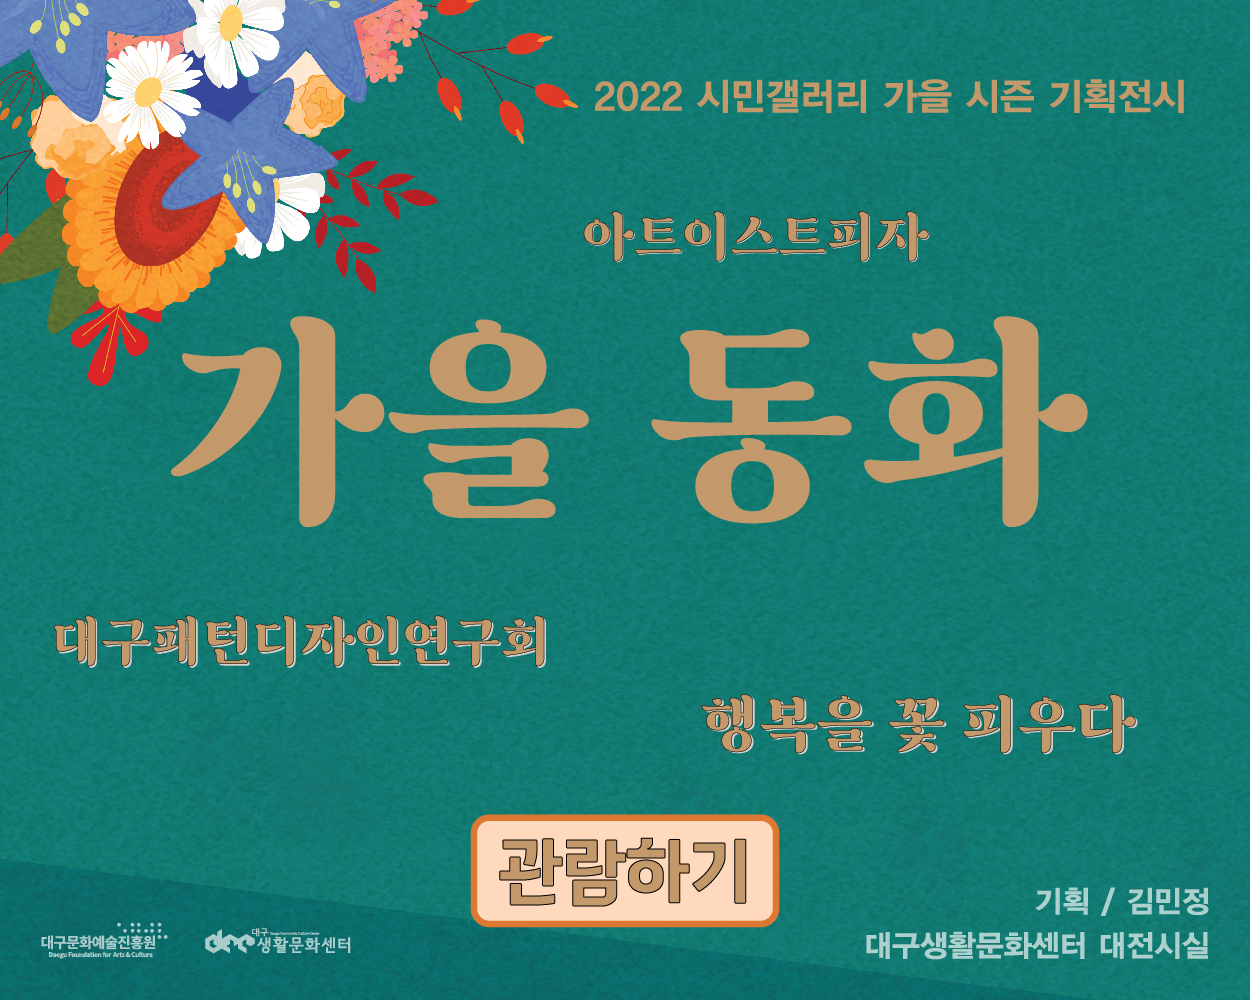 [2022 시민갤러리] 가을 시즌 기획 전시 온라인 갤러리